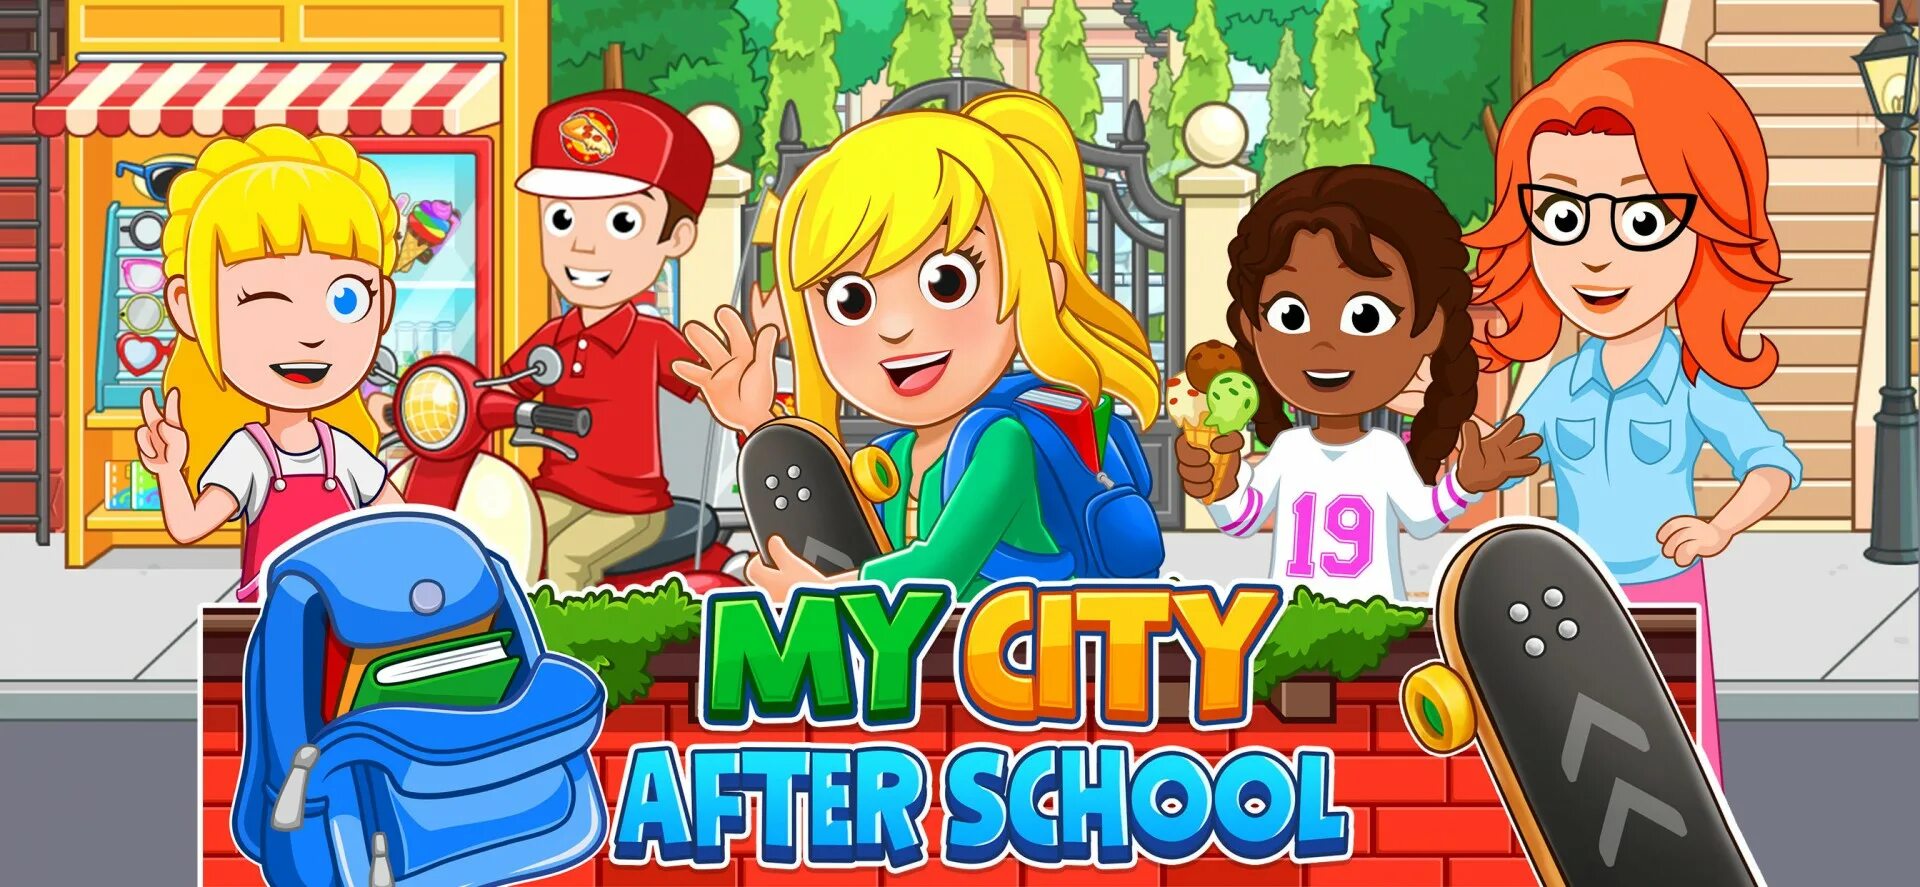 O my games. My City дом .. My City моих. Tag after School игра. Игры для всей школы на улицы.